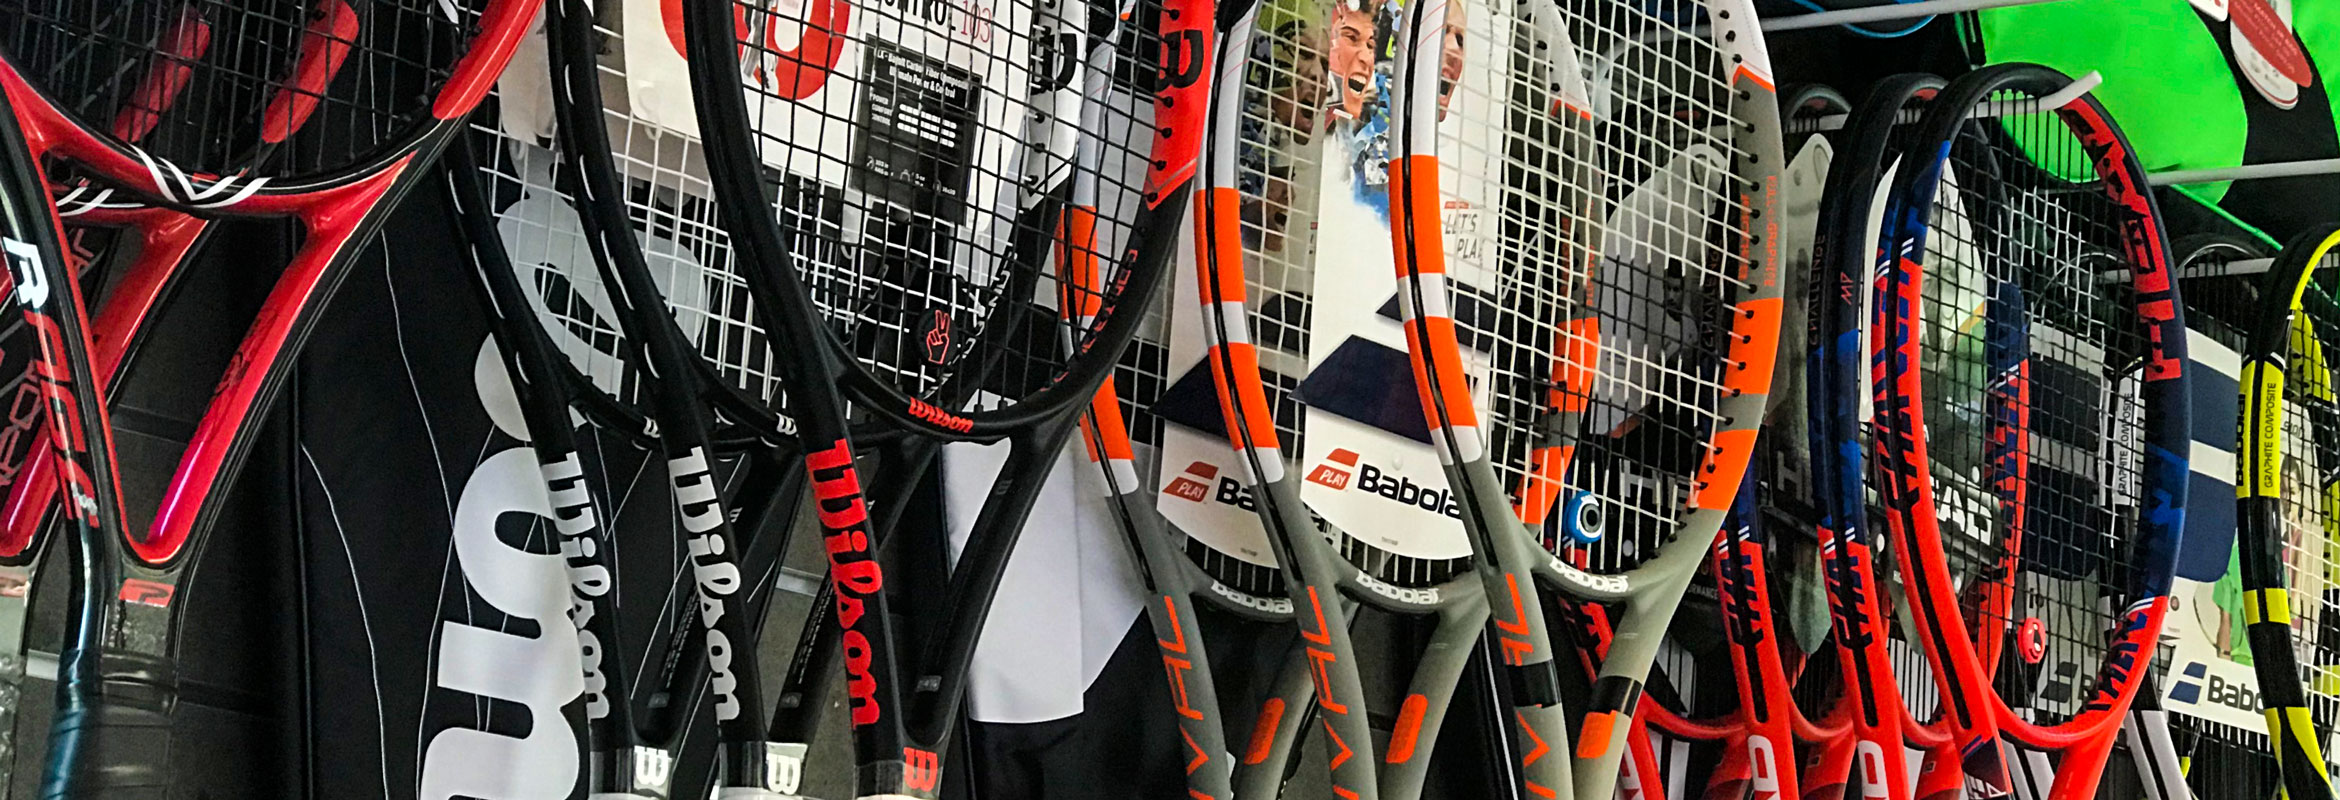 теннисный интернет-магазин Tennis Mart